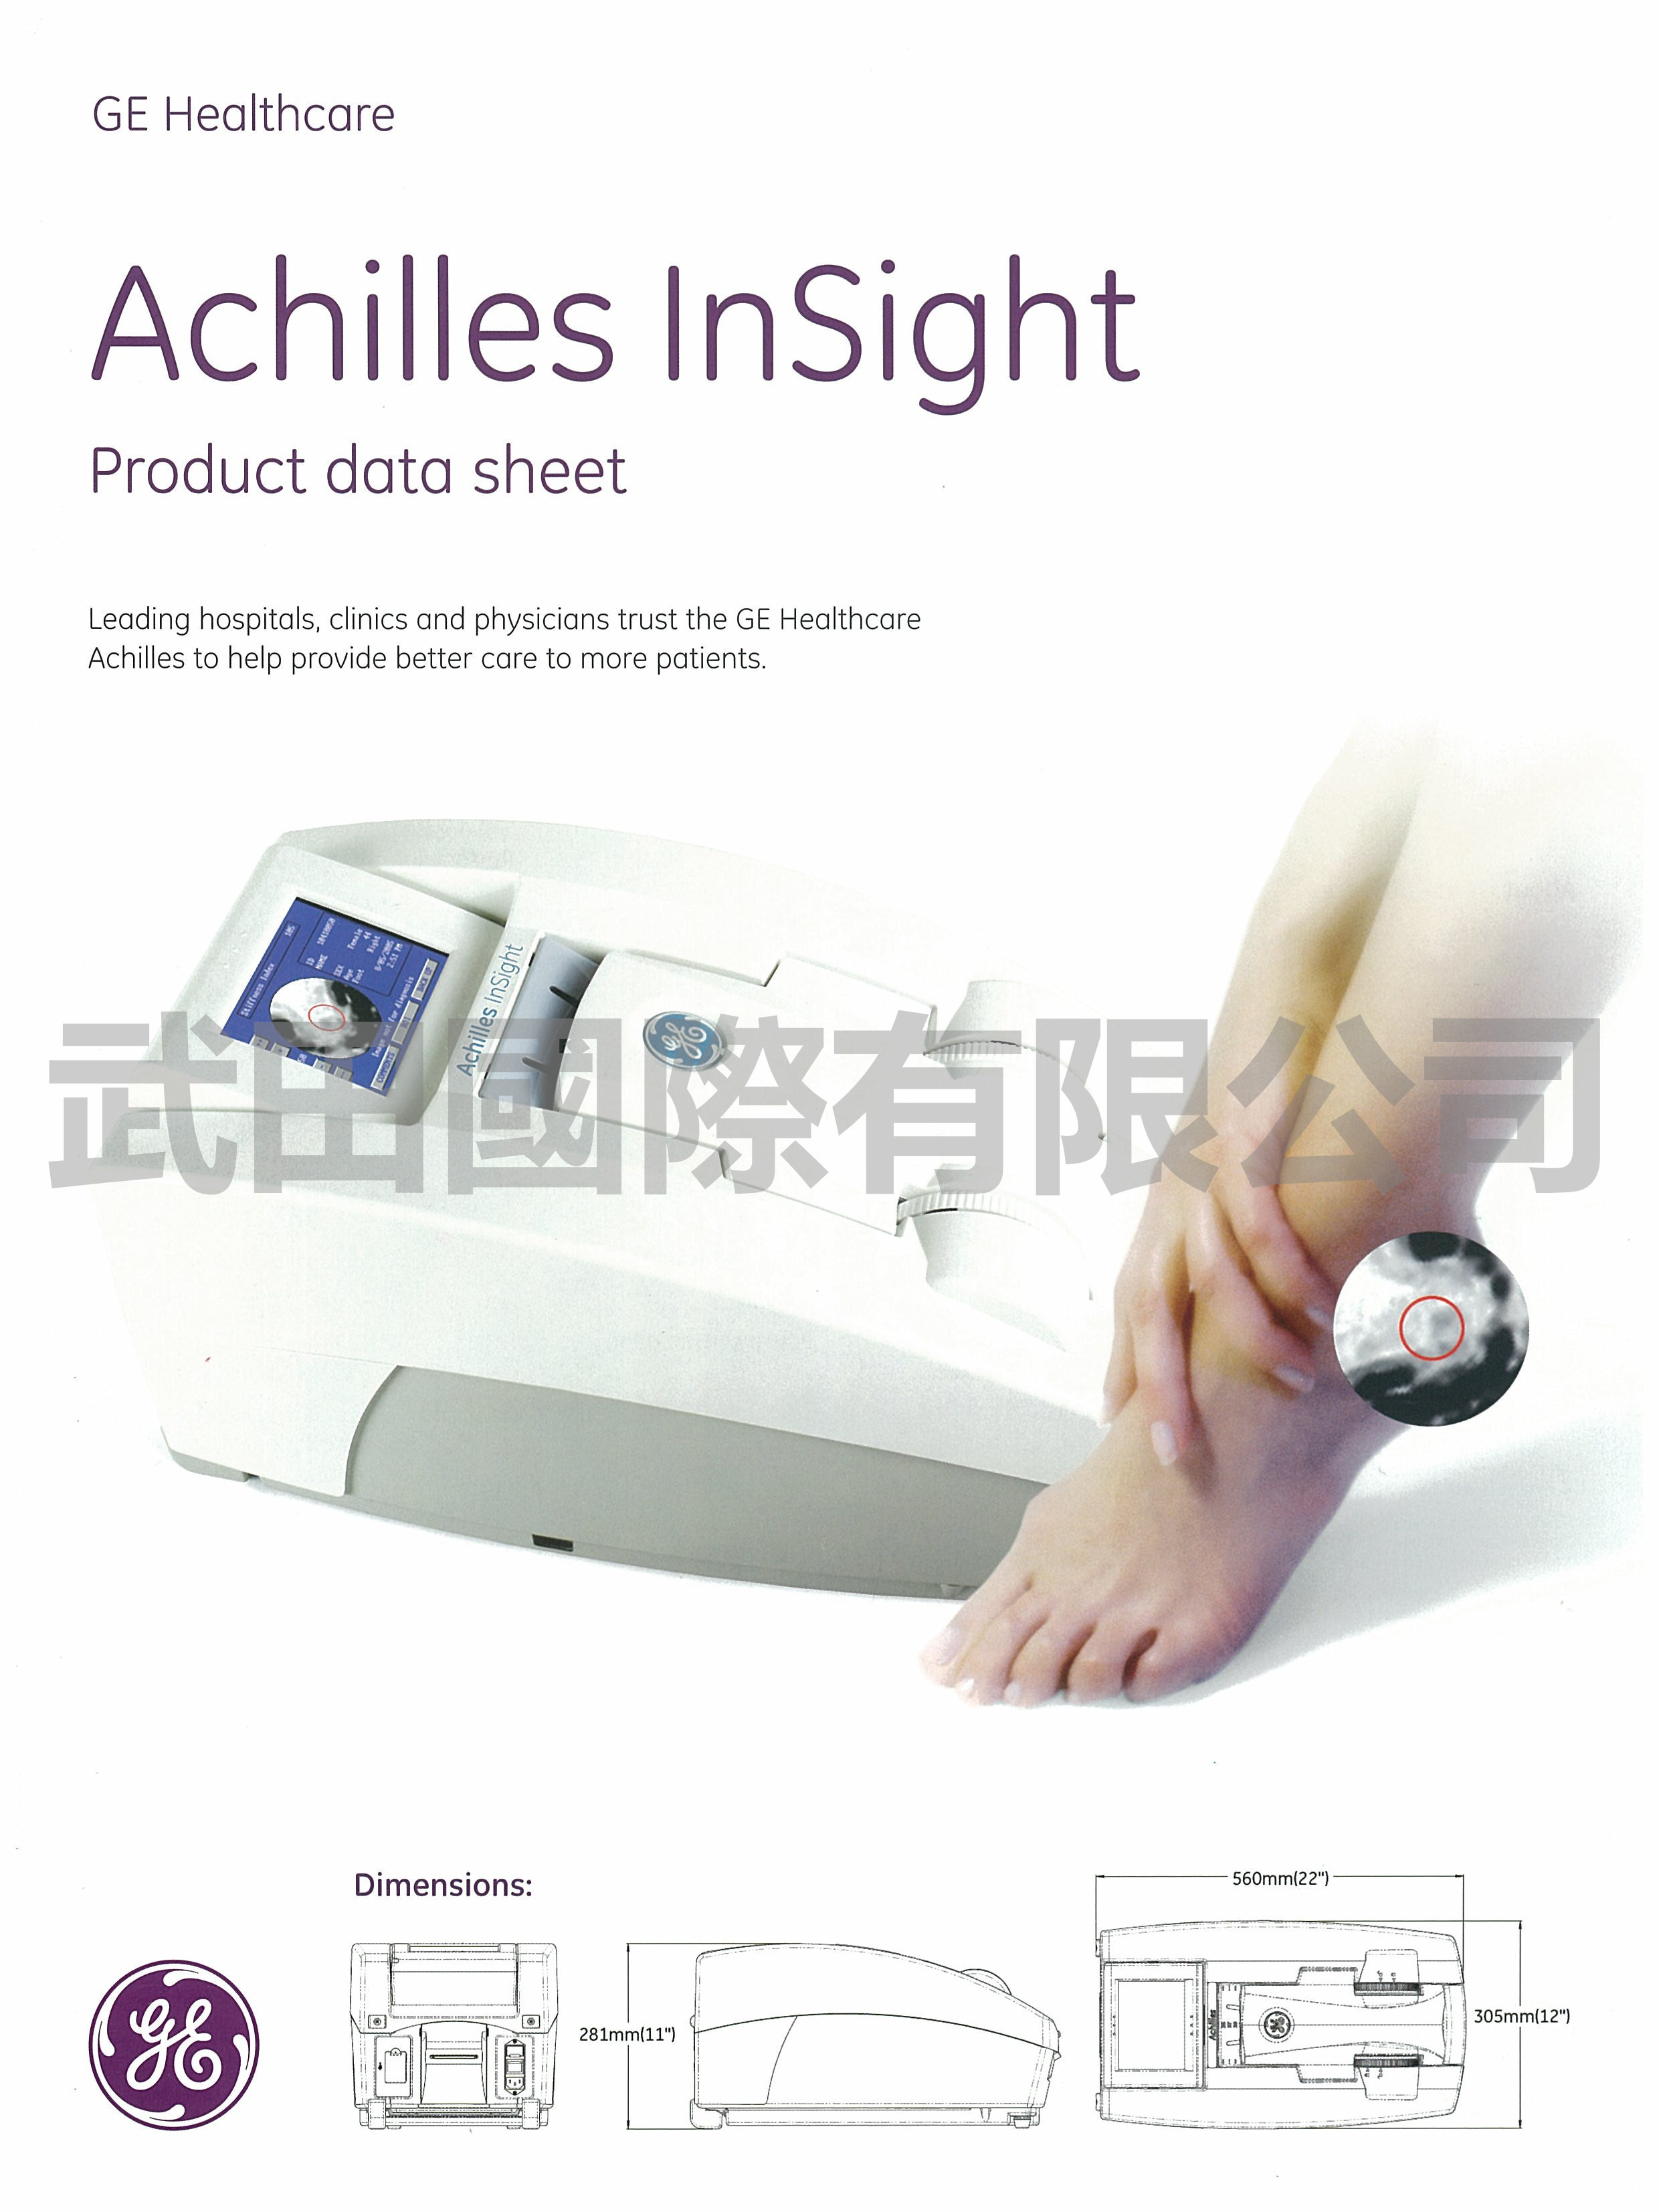 中古 GE Achilles Insight 彩色超音波骨質密度檢測儀 簡易版電子檔型錄_頁面_1.jpg